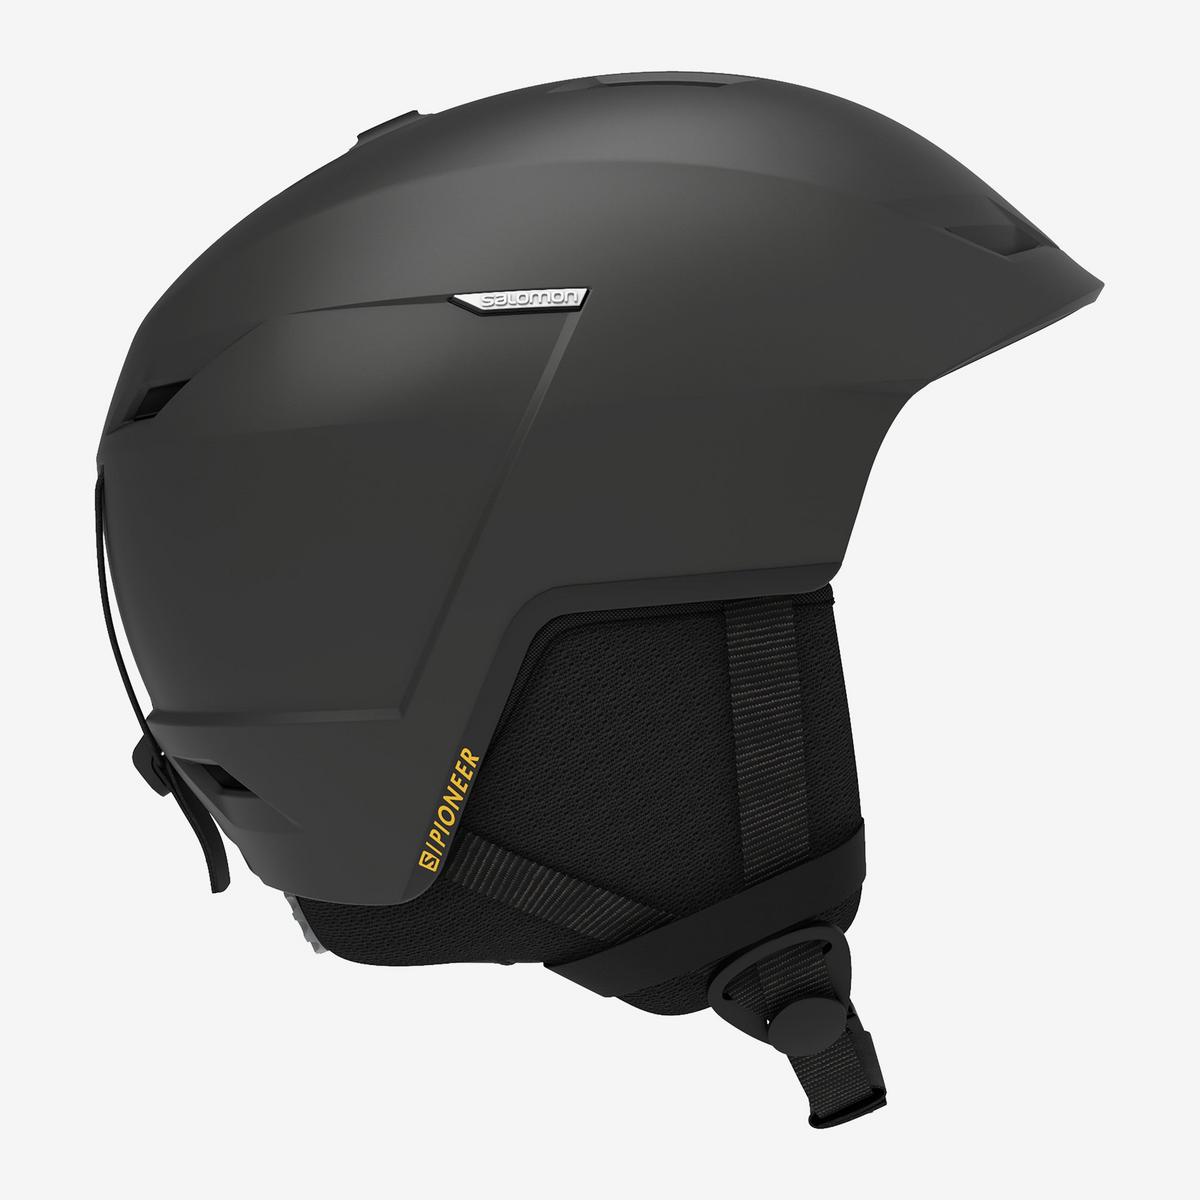 Salomon Pioneer LT Helmet - Beluga